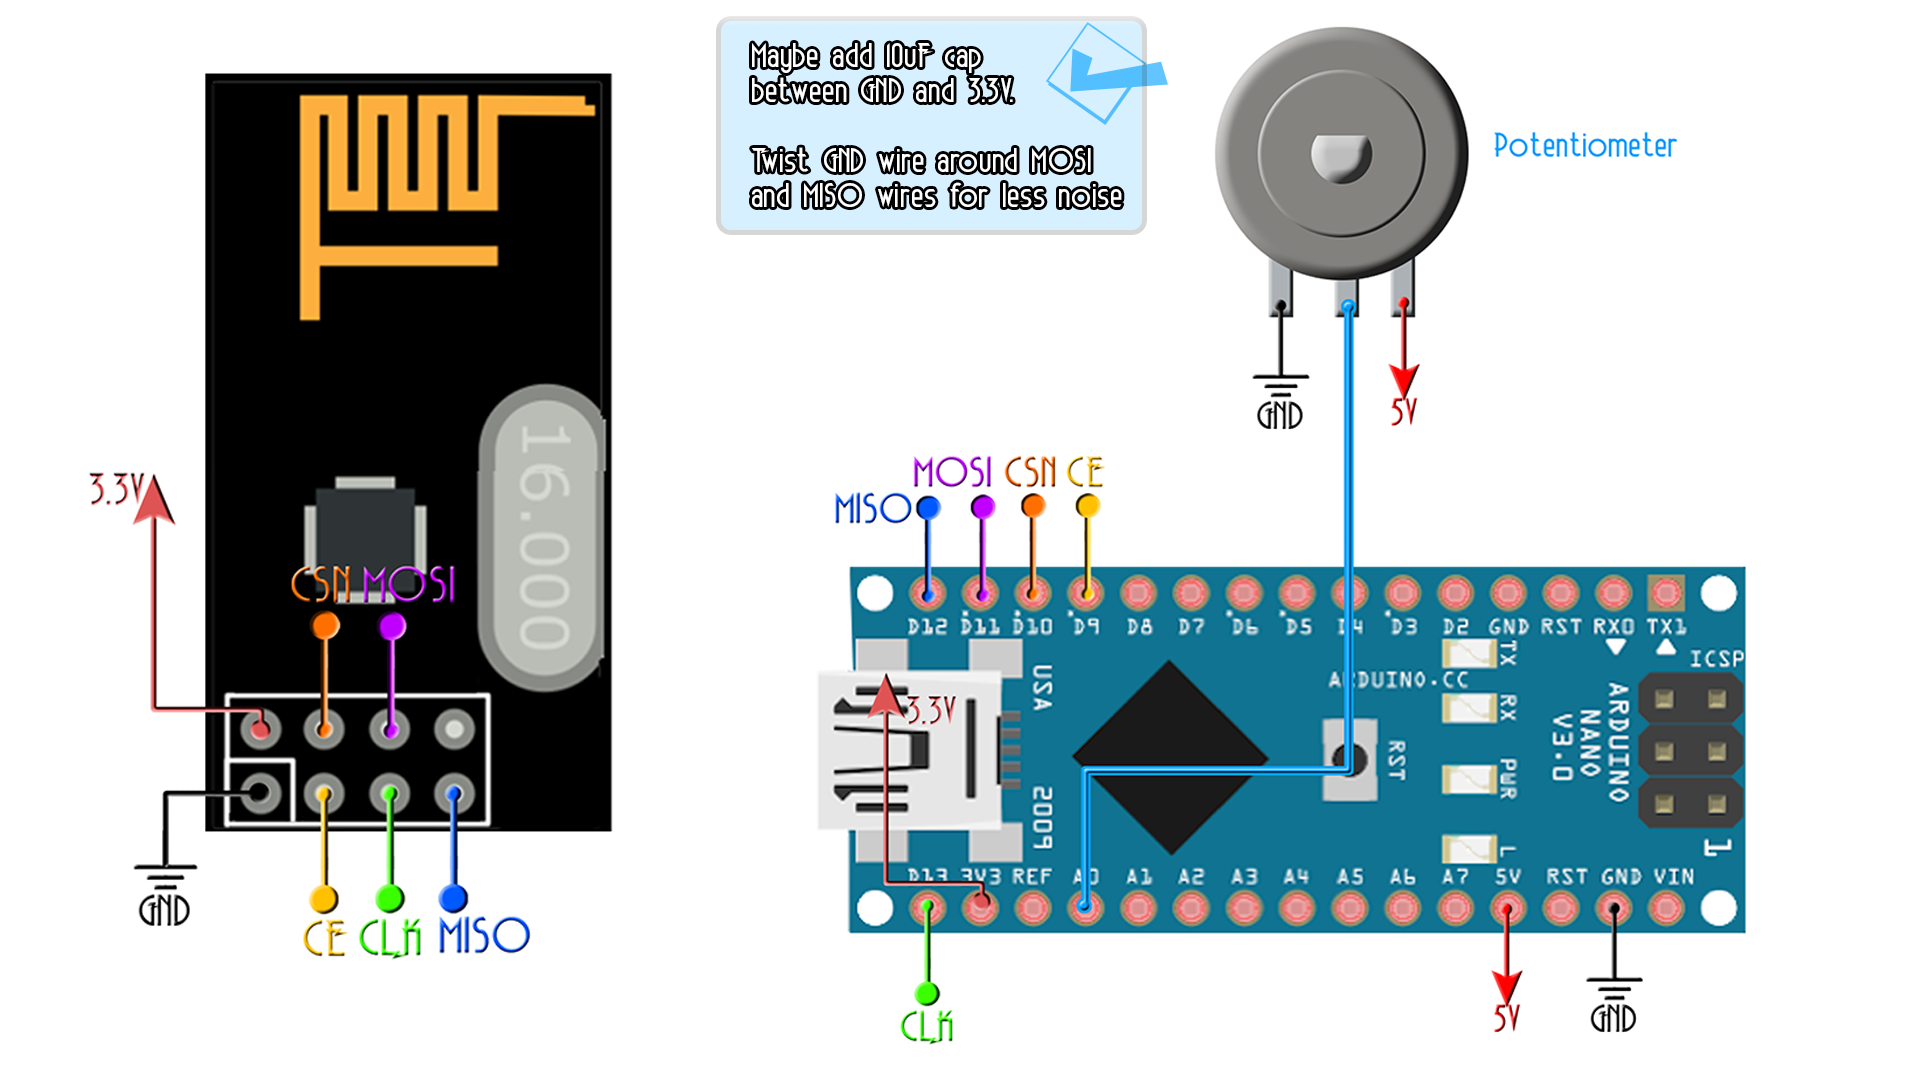 Fabriquer une Radiocommande Arduino nRF24L01 (émetteur RC)